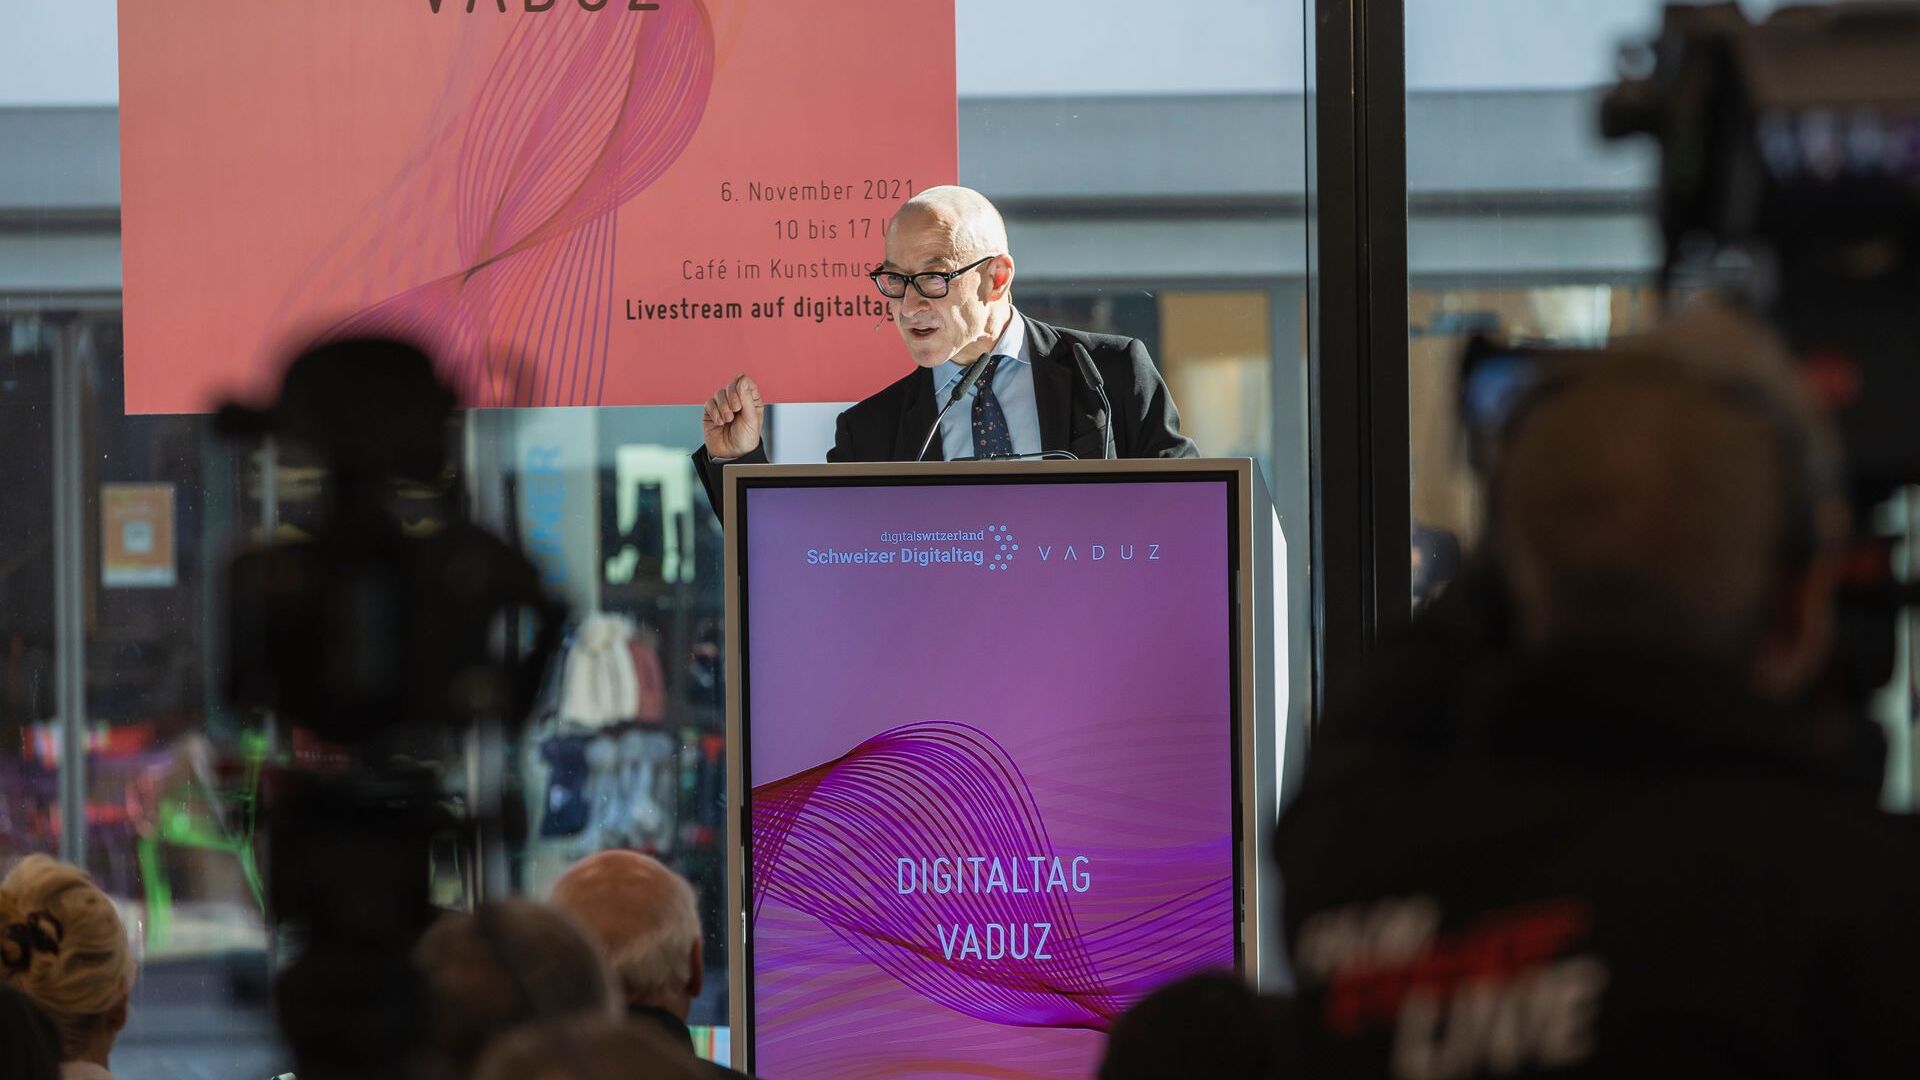 «Digitaltag Vaduz», приветствовавшийся Художественным музеем столицы Княжества Лихтенштейн в субботу, 6 ноября 2021 г., вызвал энтузиазм публики и выступающих по аналогии с «Швейцарским цифровым днем» следующего дня 10: вмешательство футуролог и знаток немецких тенденций Давид Босхарт